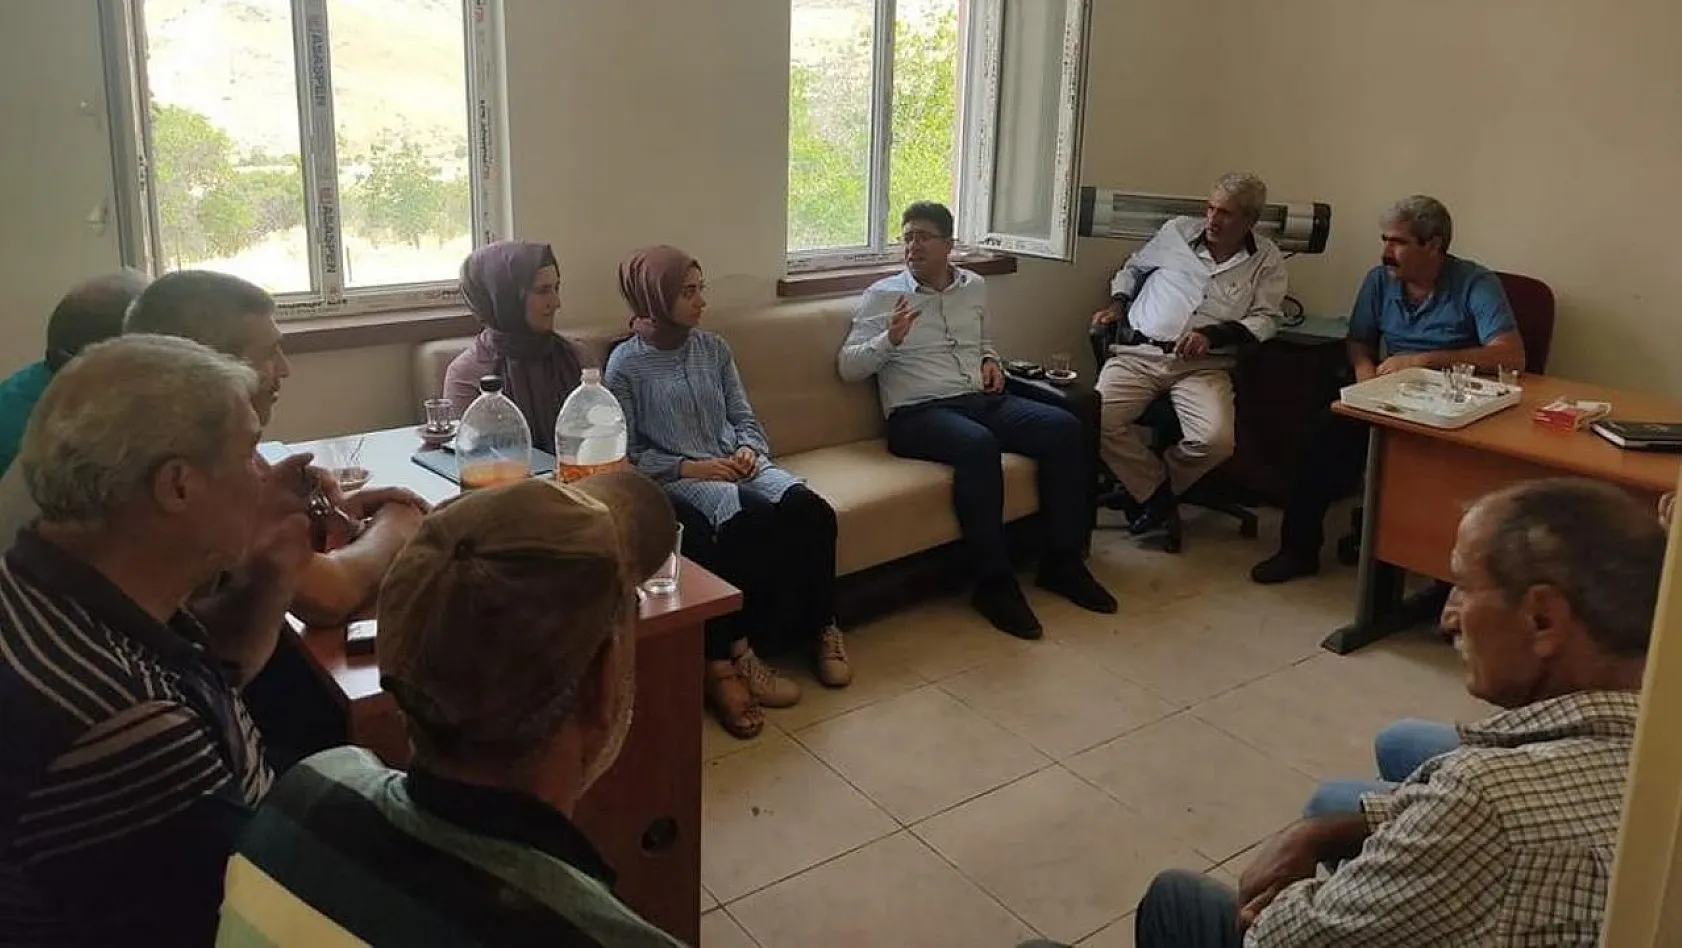 Elazığ'da çiftçilere yönelik bilgilendirme toplantısı